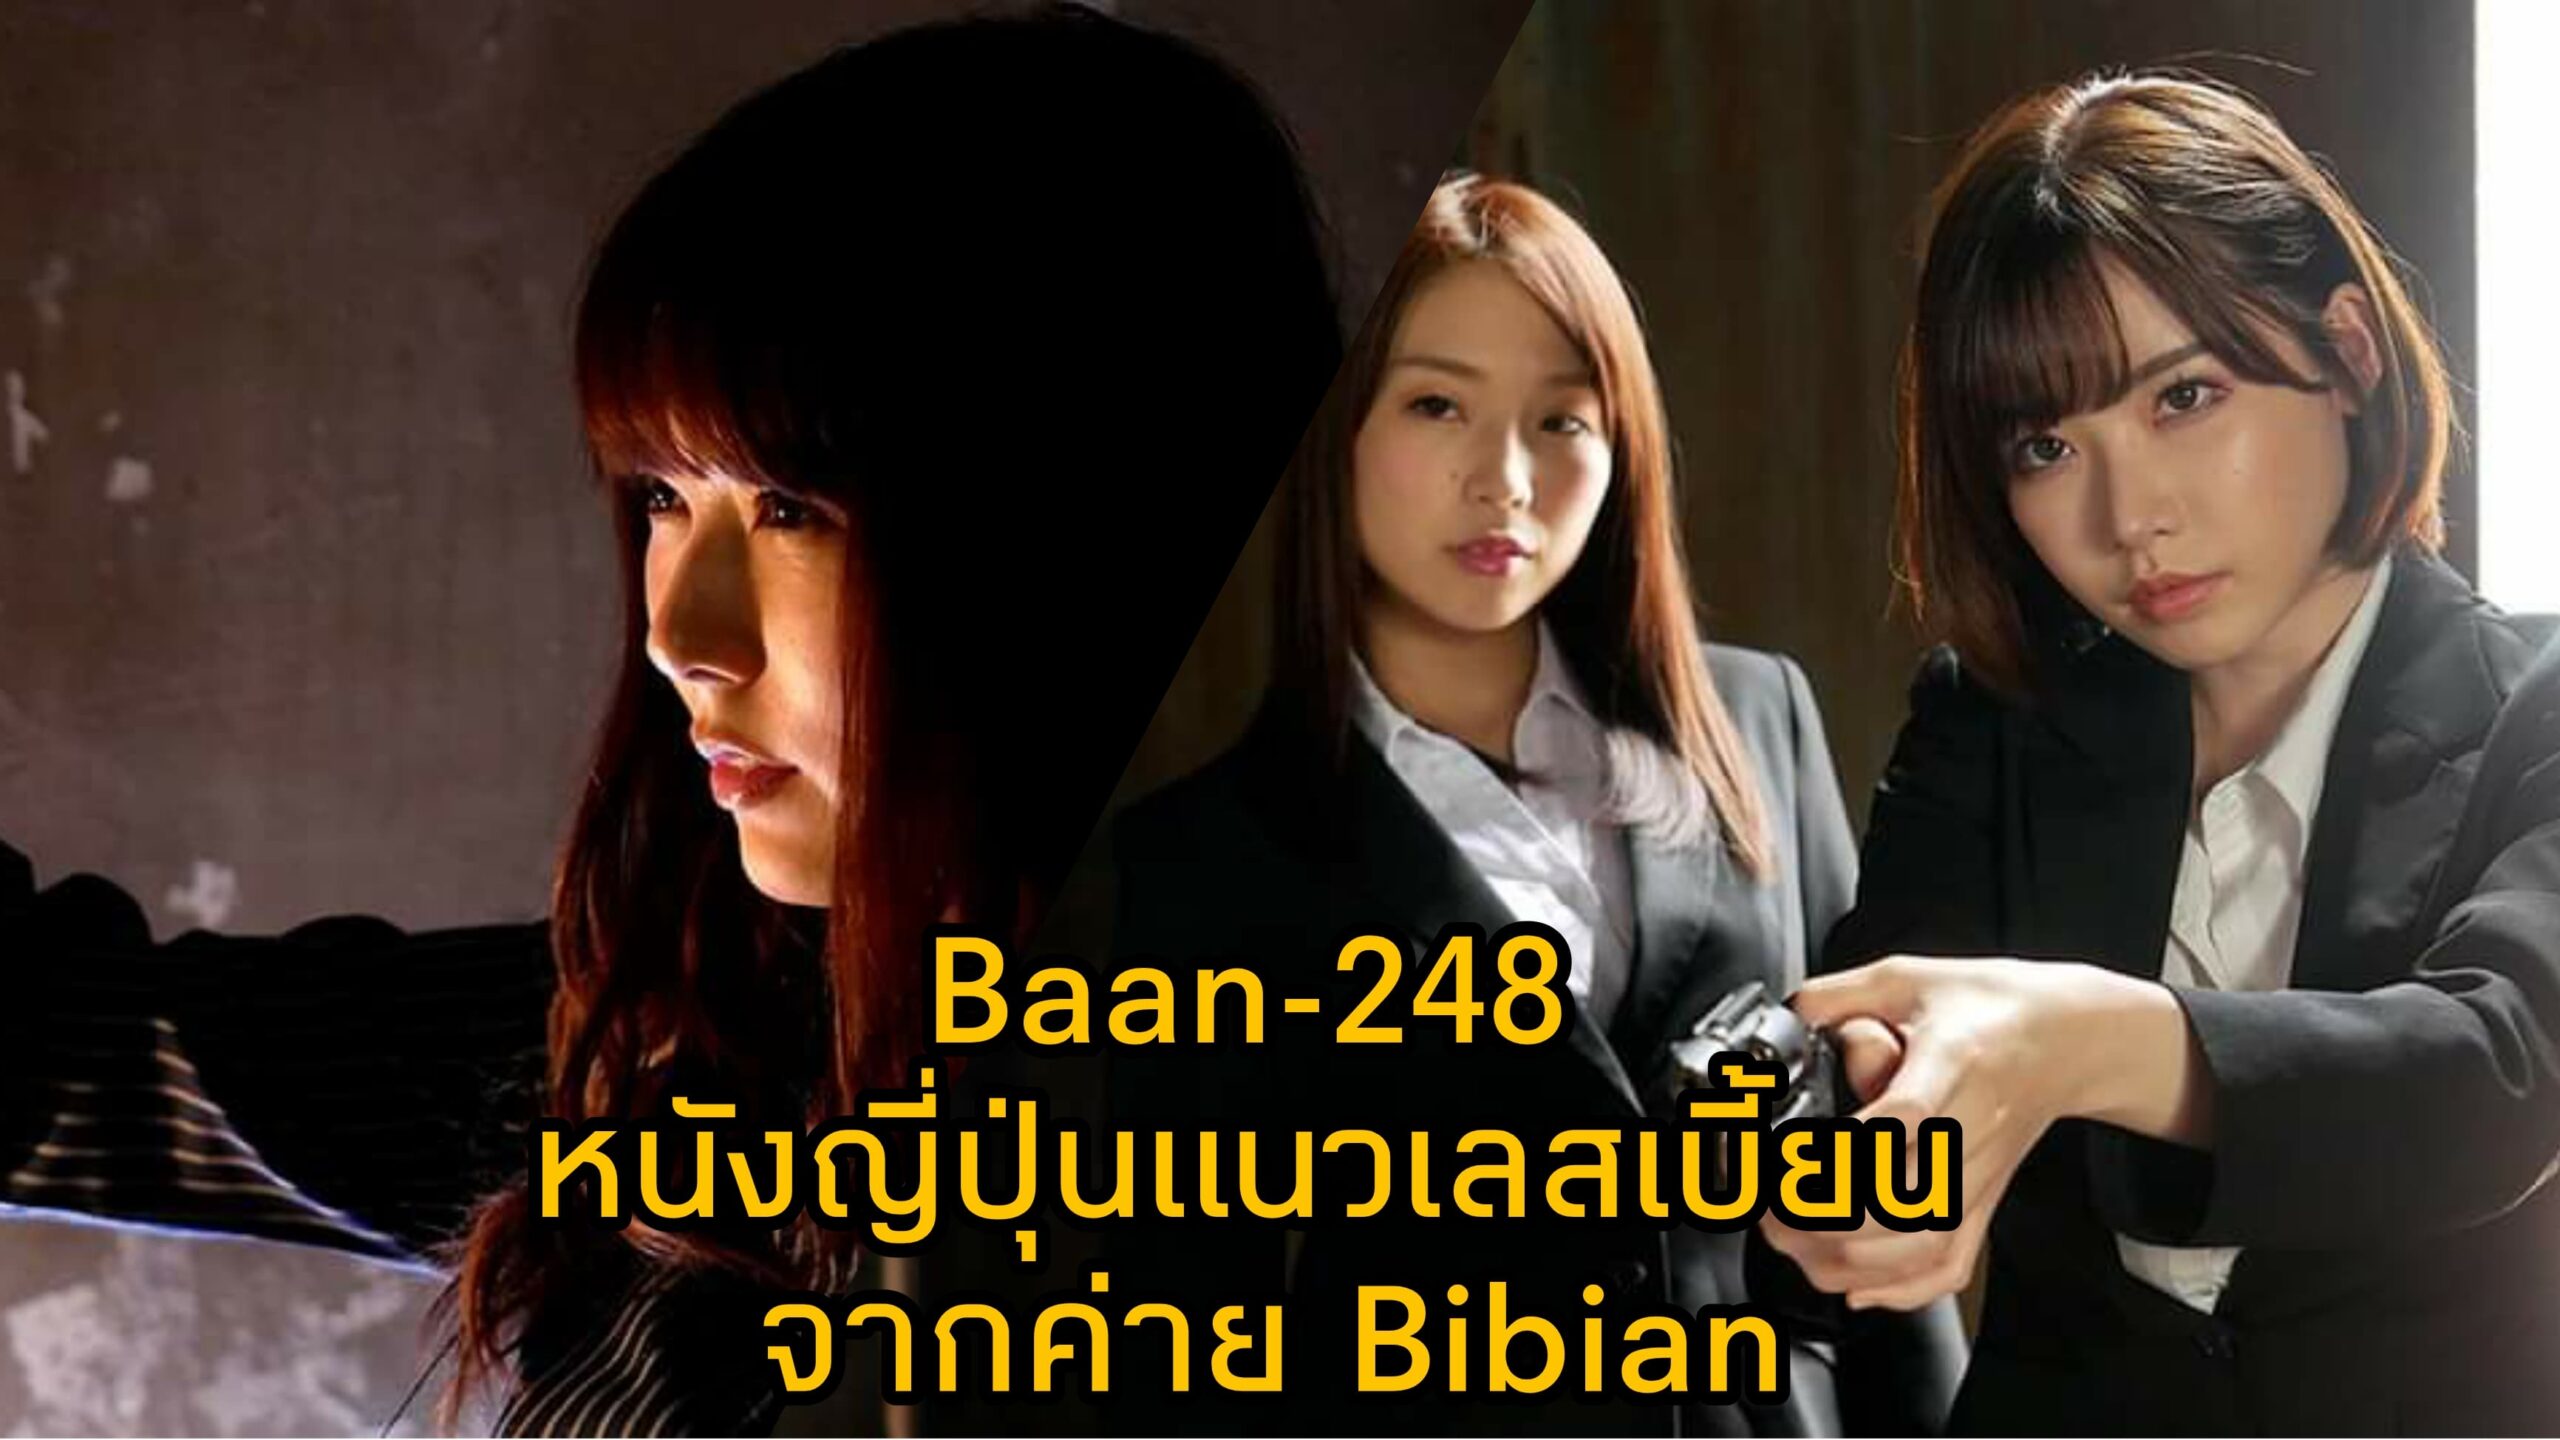 Bann-248 หนัง JAV แนวเลสเบี้ยน นำแสดงโดย 3 ตัวแม่แห่งวงการเอวี Eimi Fukada 4